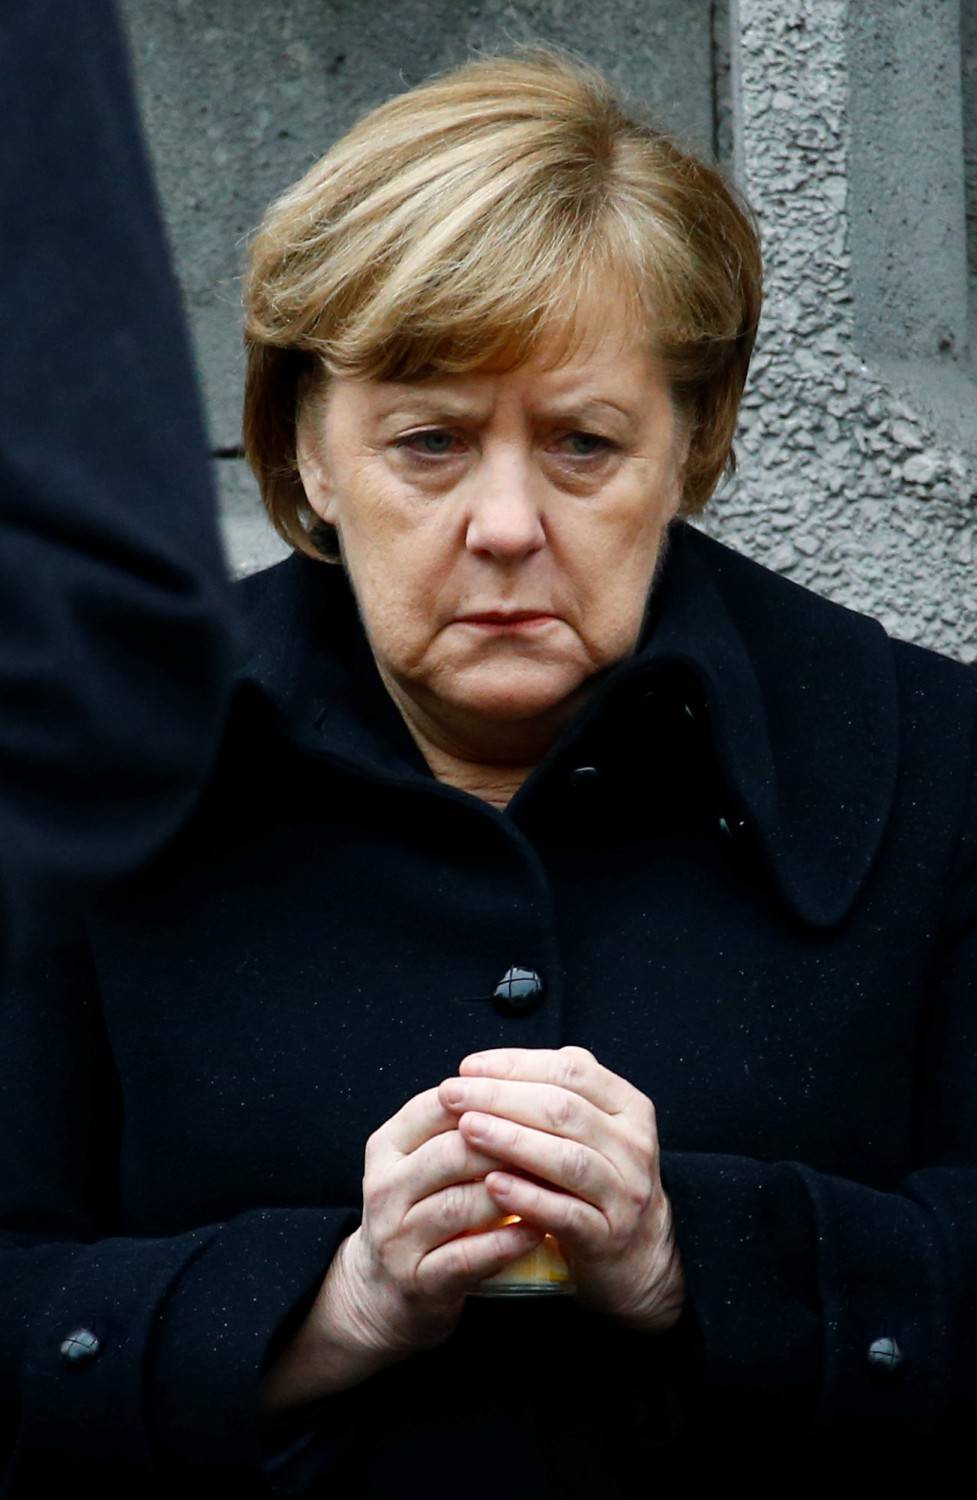 "Inno nazionale tedesco è maschilista".  Ma alla Merkel piace così